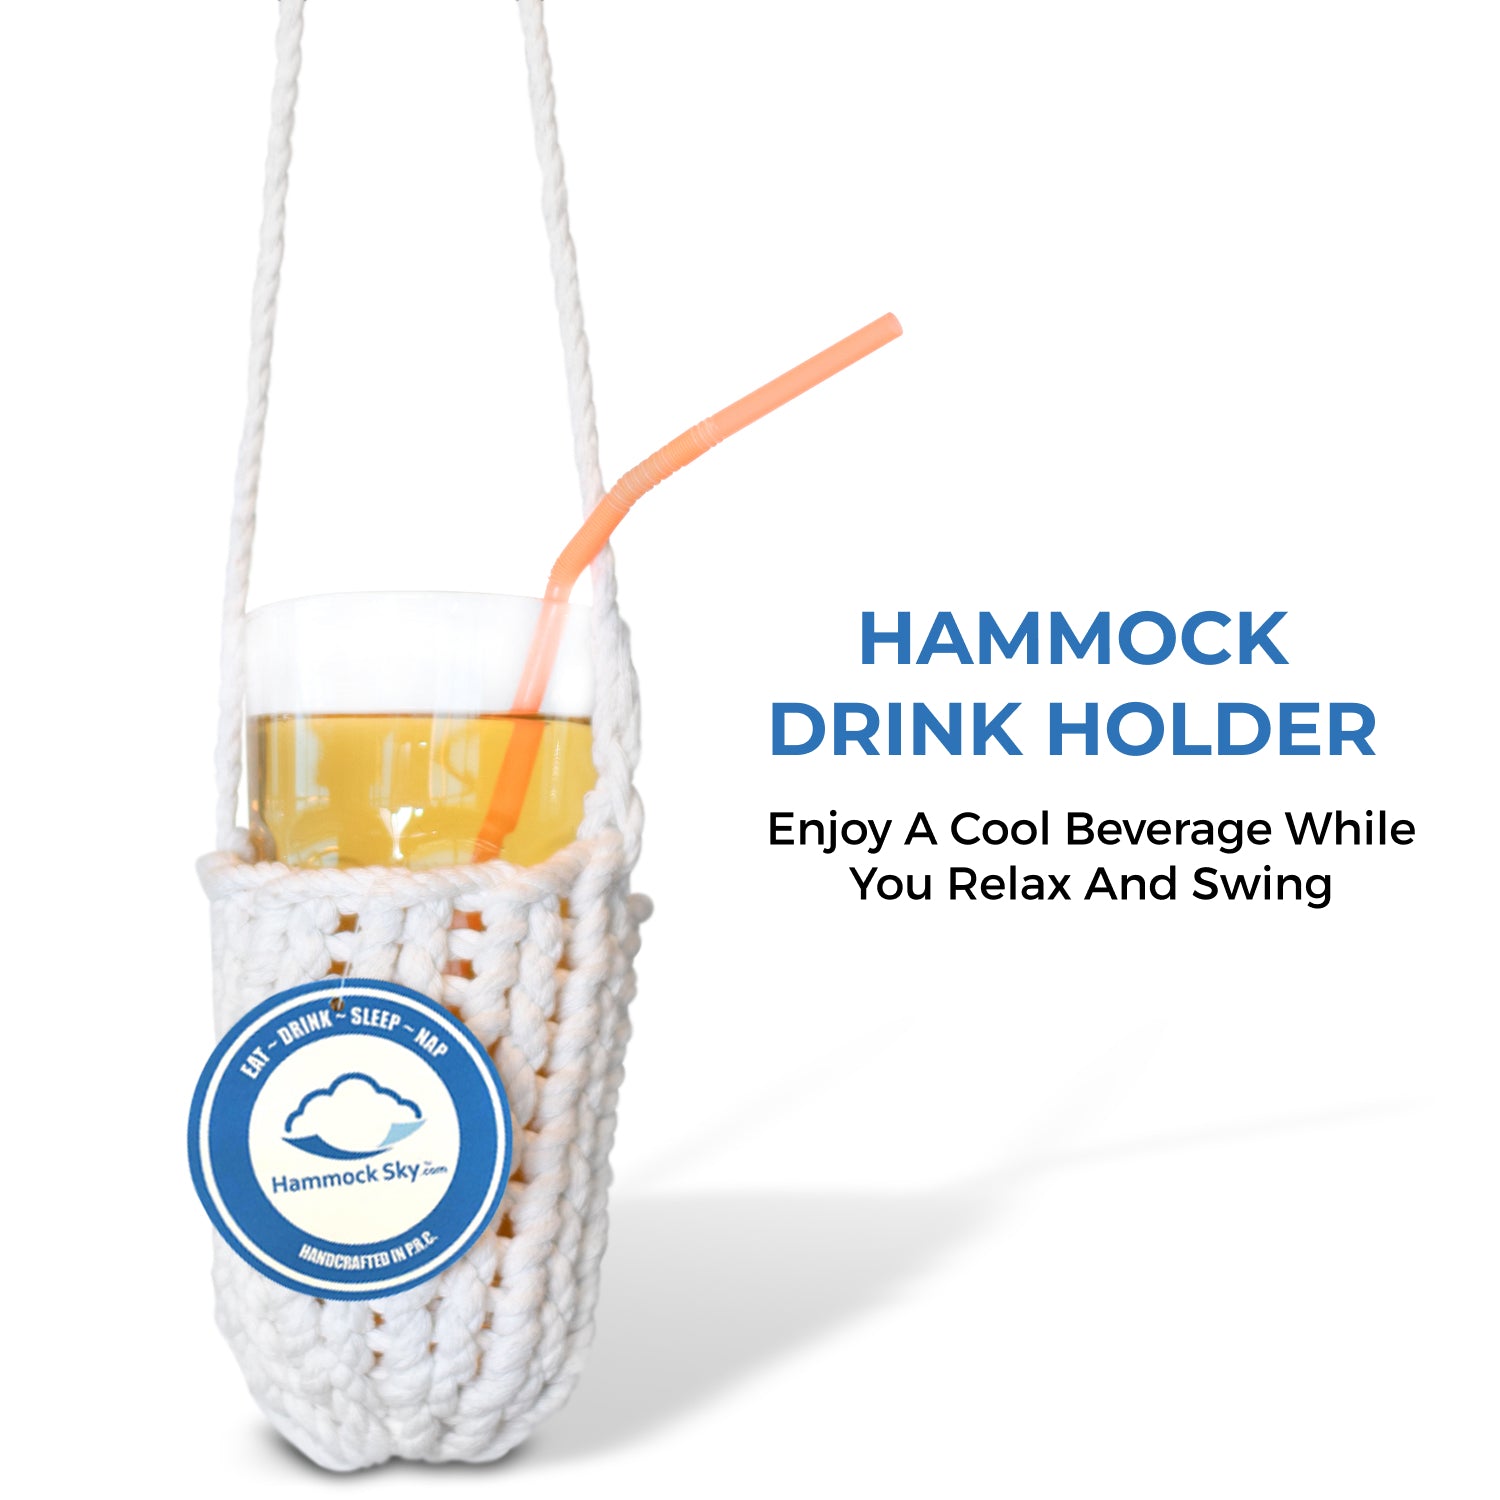 Hammock Drink Holder